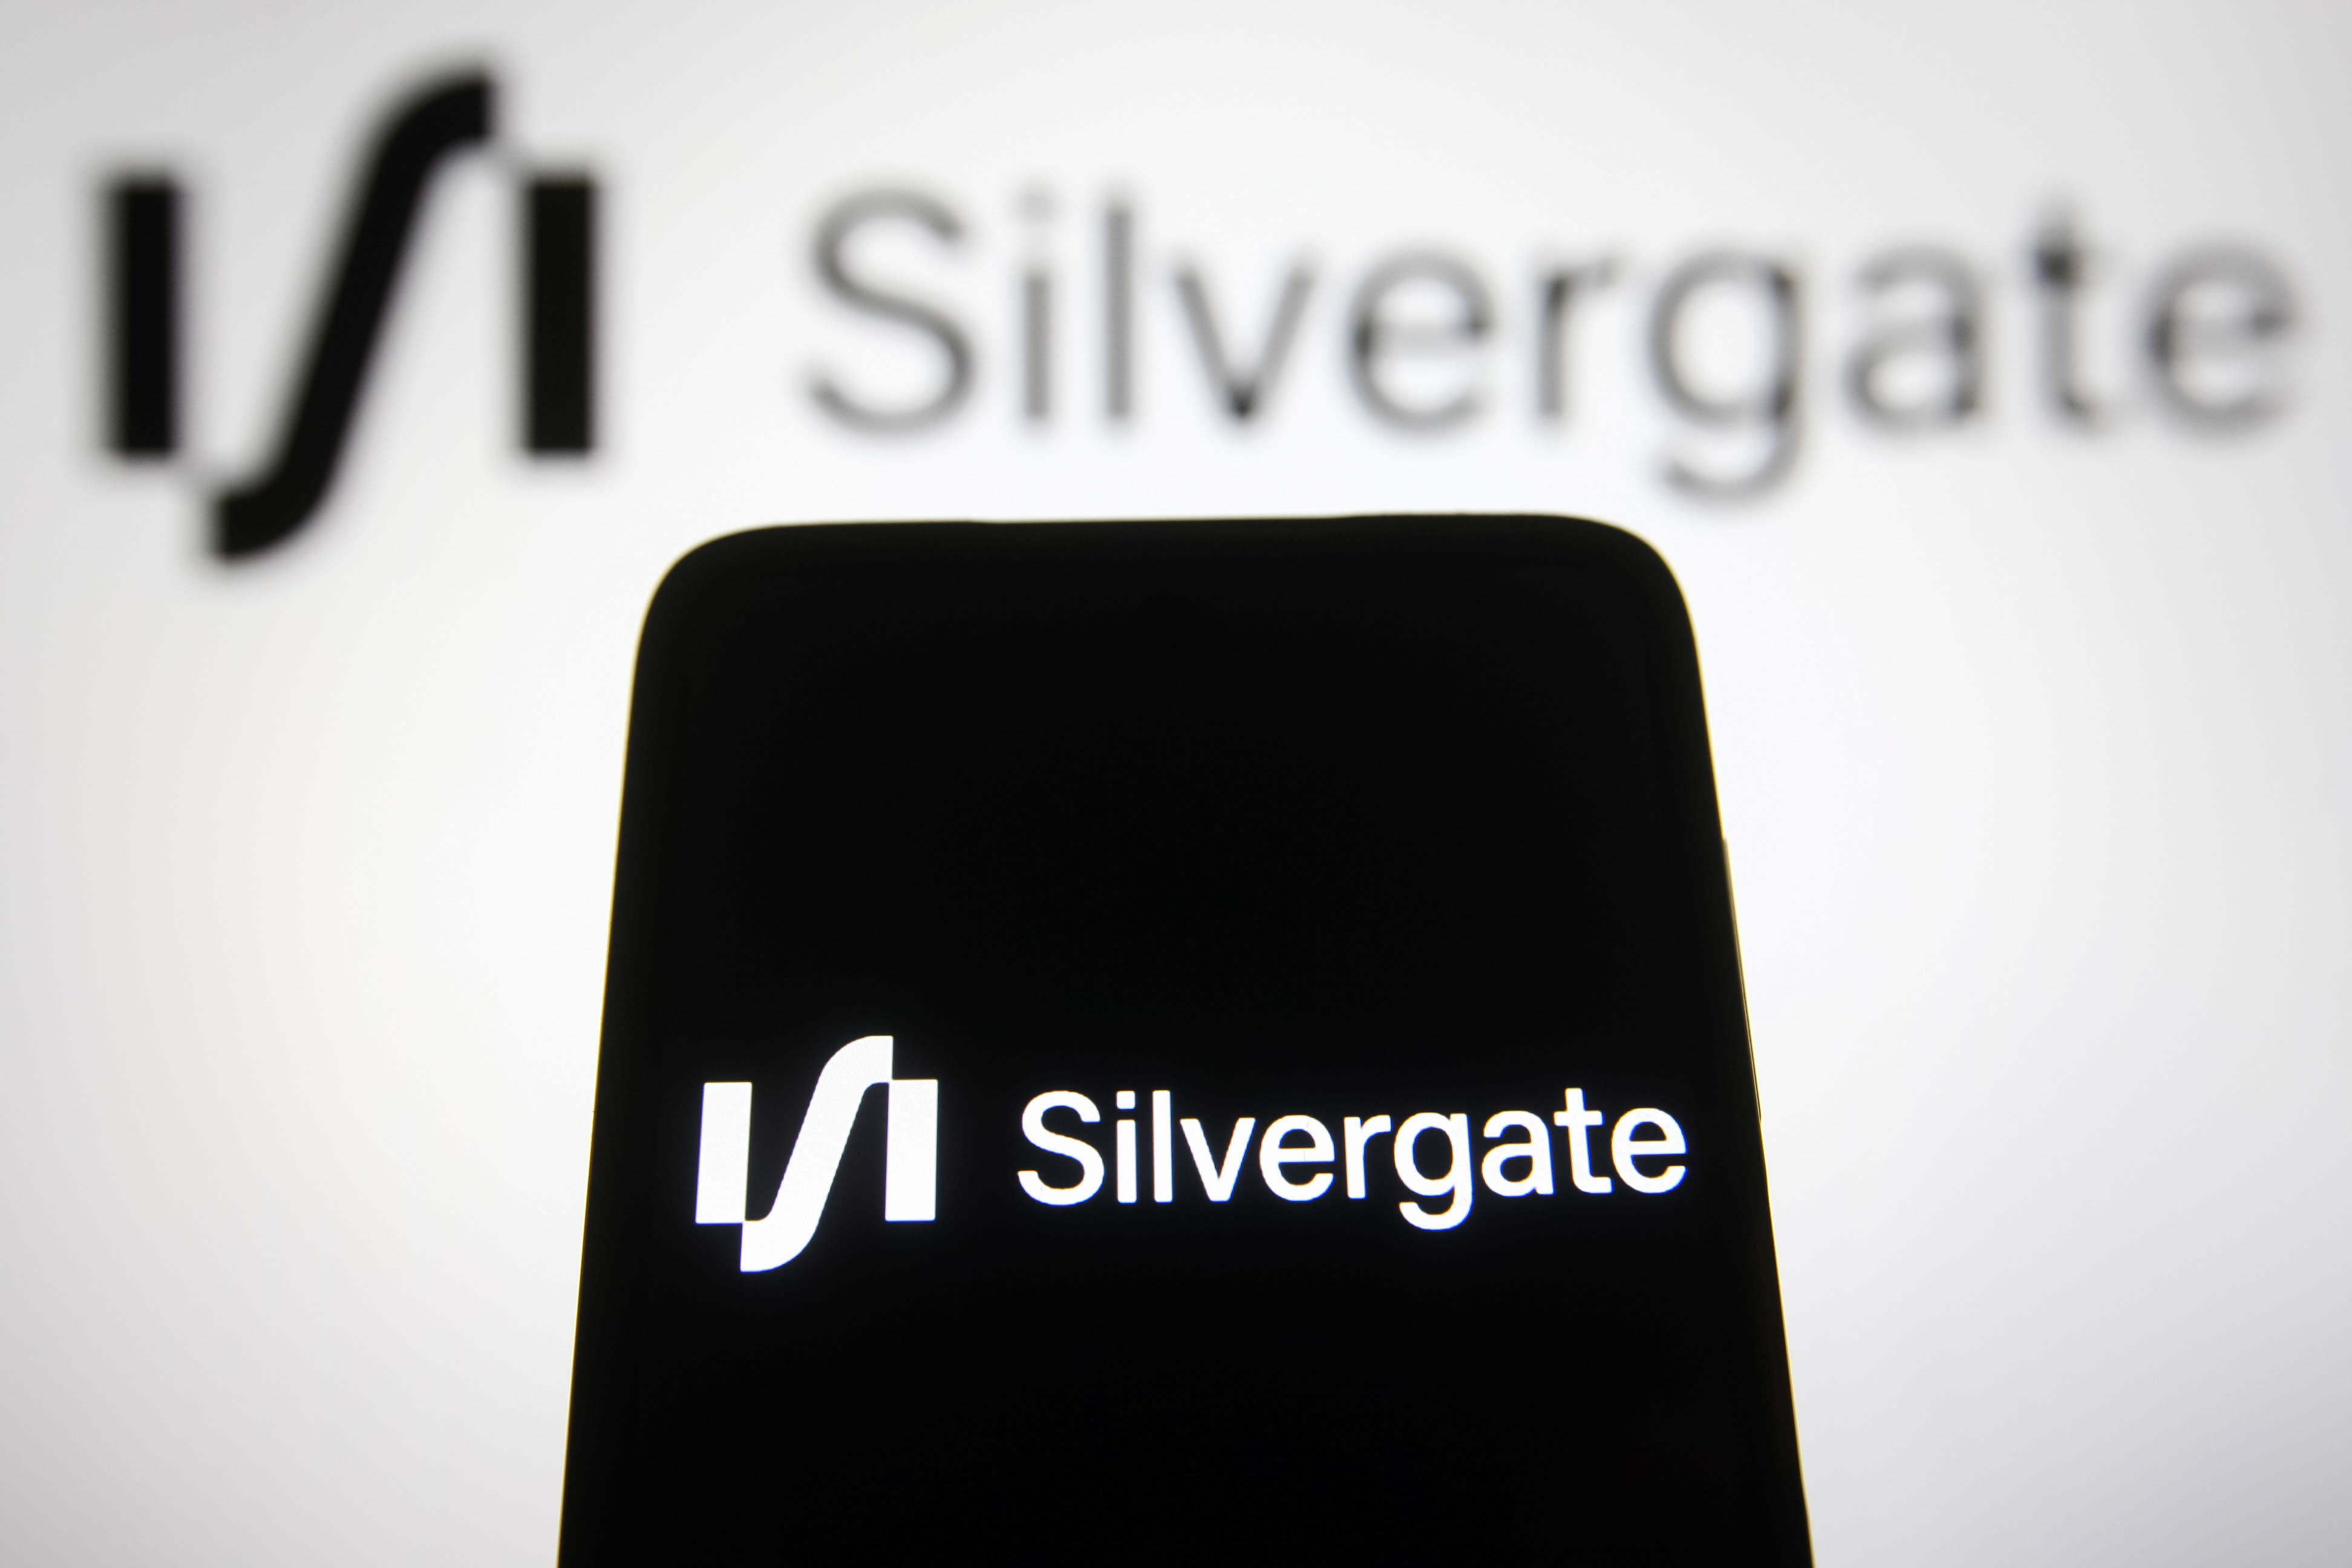 Silvergate, Etsy, SVB Financial, Uber e altro ancora